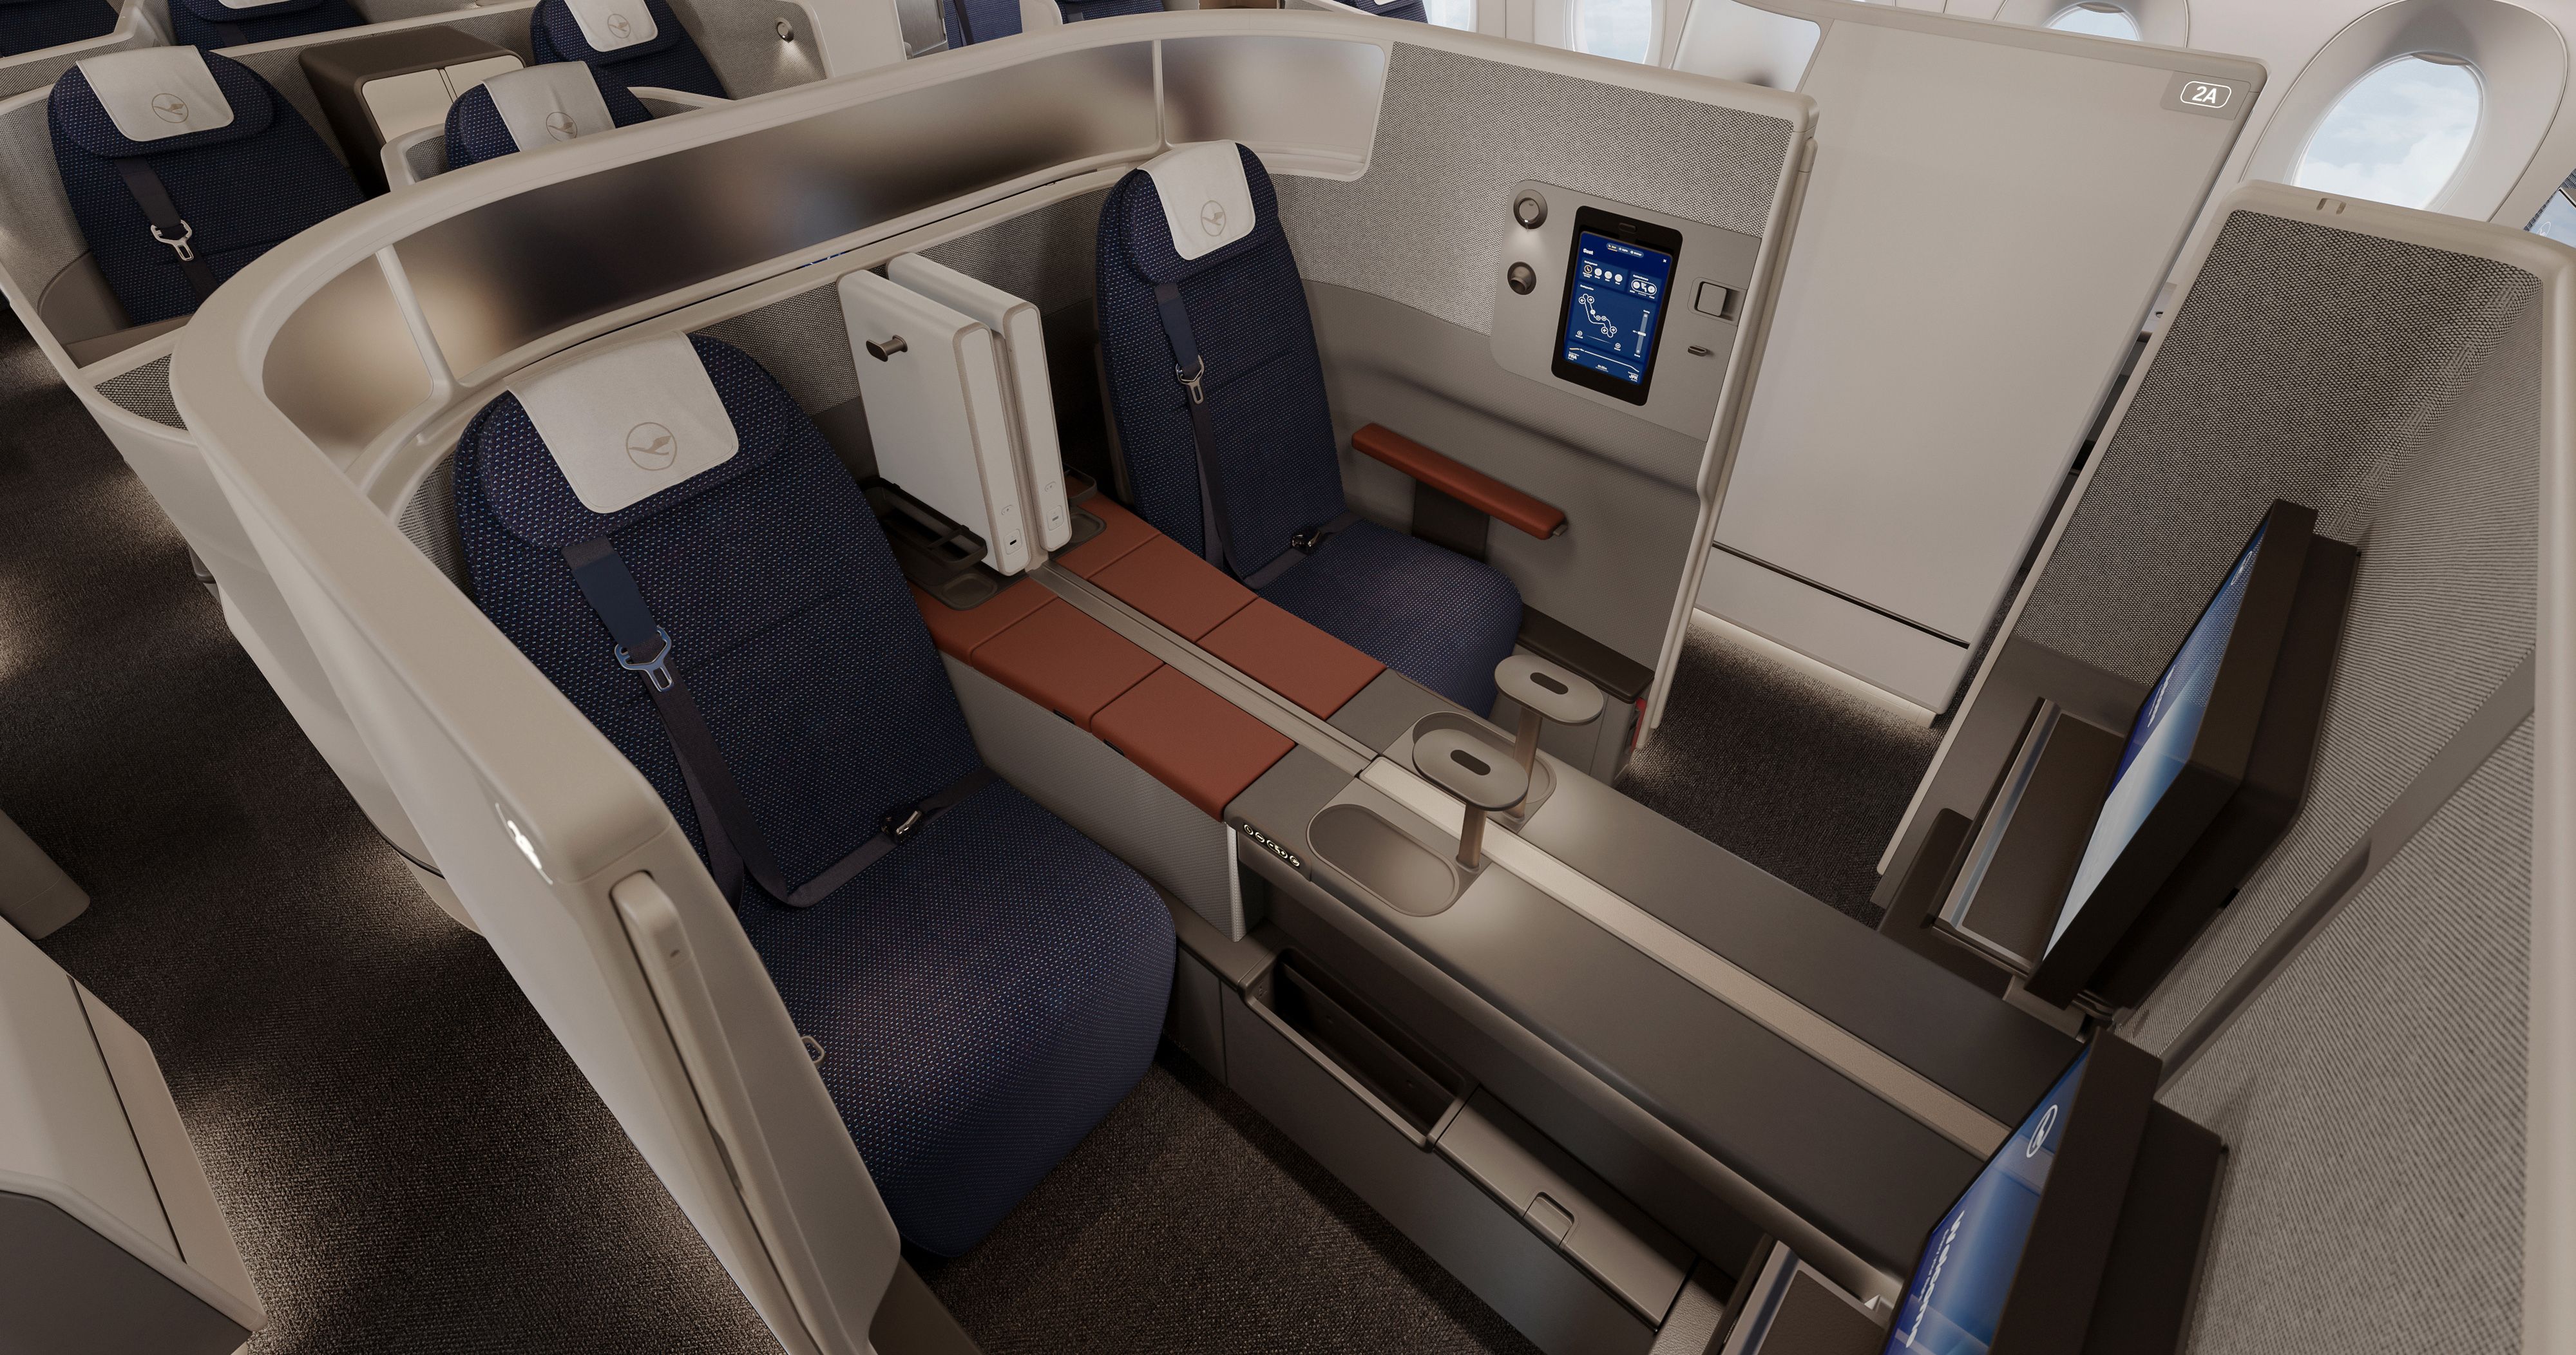 Lufthansa's new Allegris business class cabin